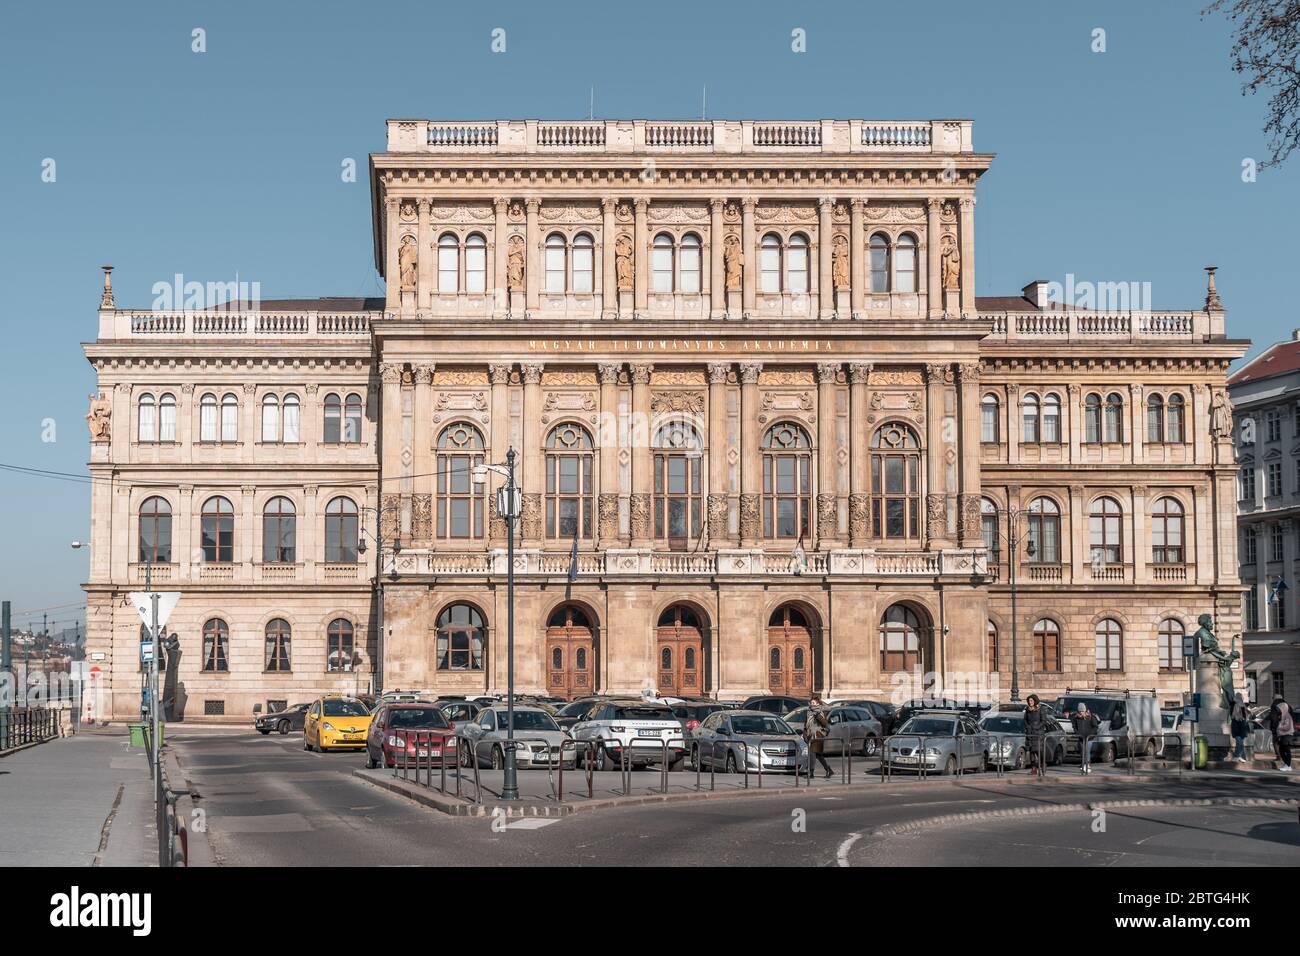 Feb 8, 2020 - Budapest, Ungarn: Fassade der Ungarischen Akademie der Wissenschaften am Morgen Stockfoto